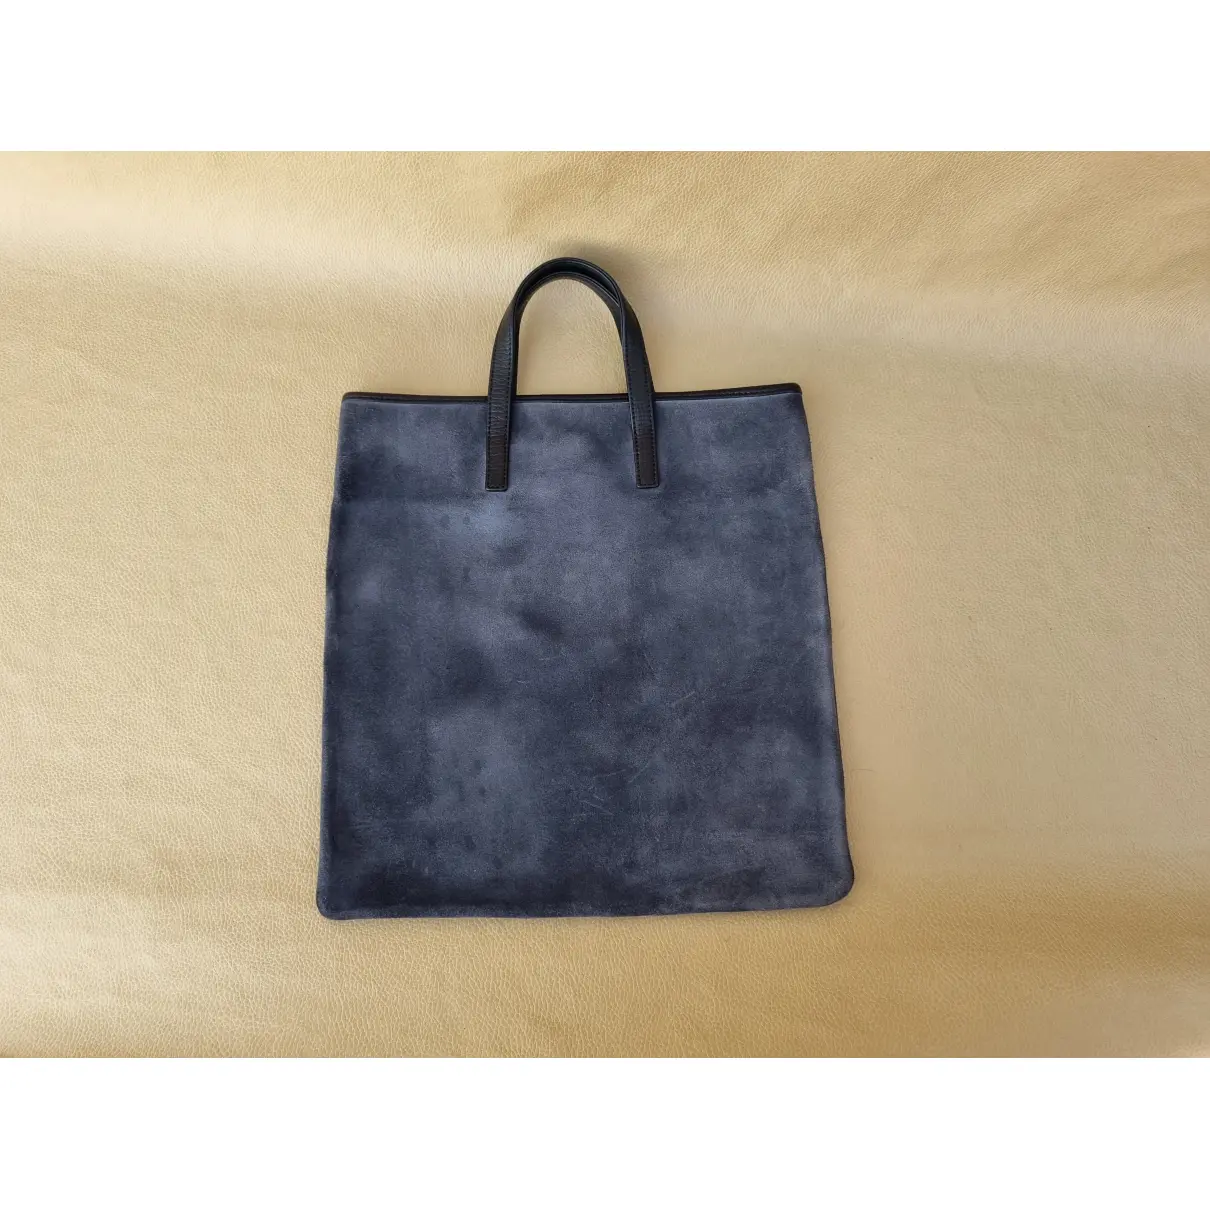 Buy Loewe Handbag online